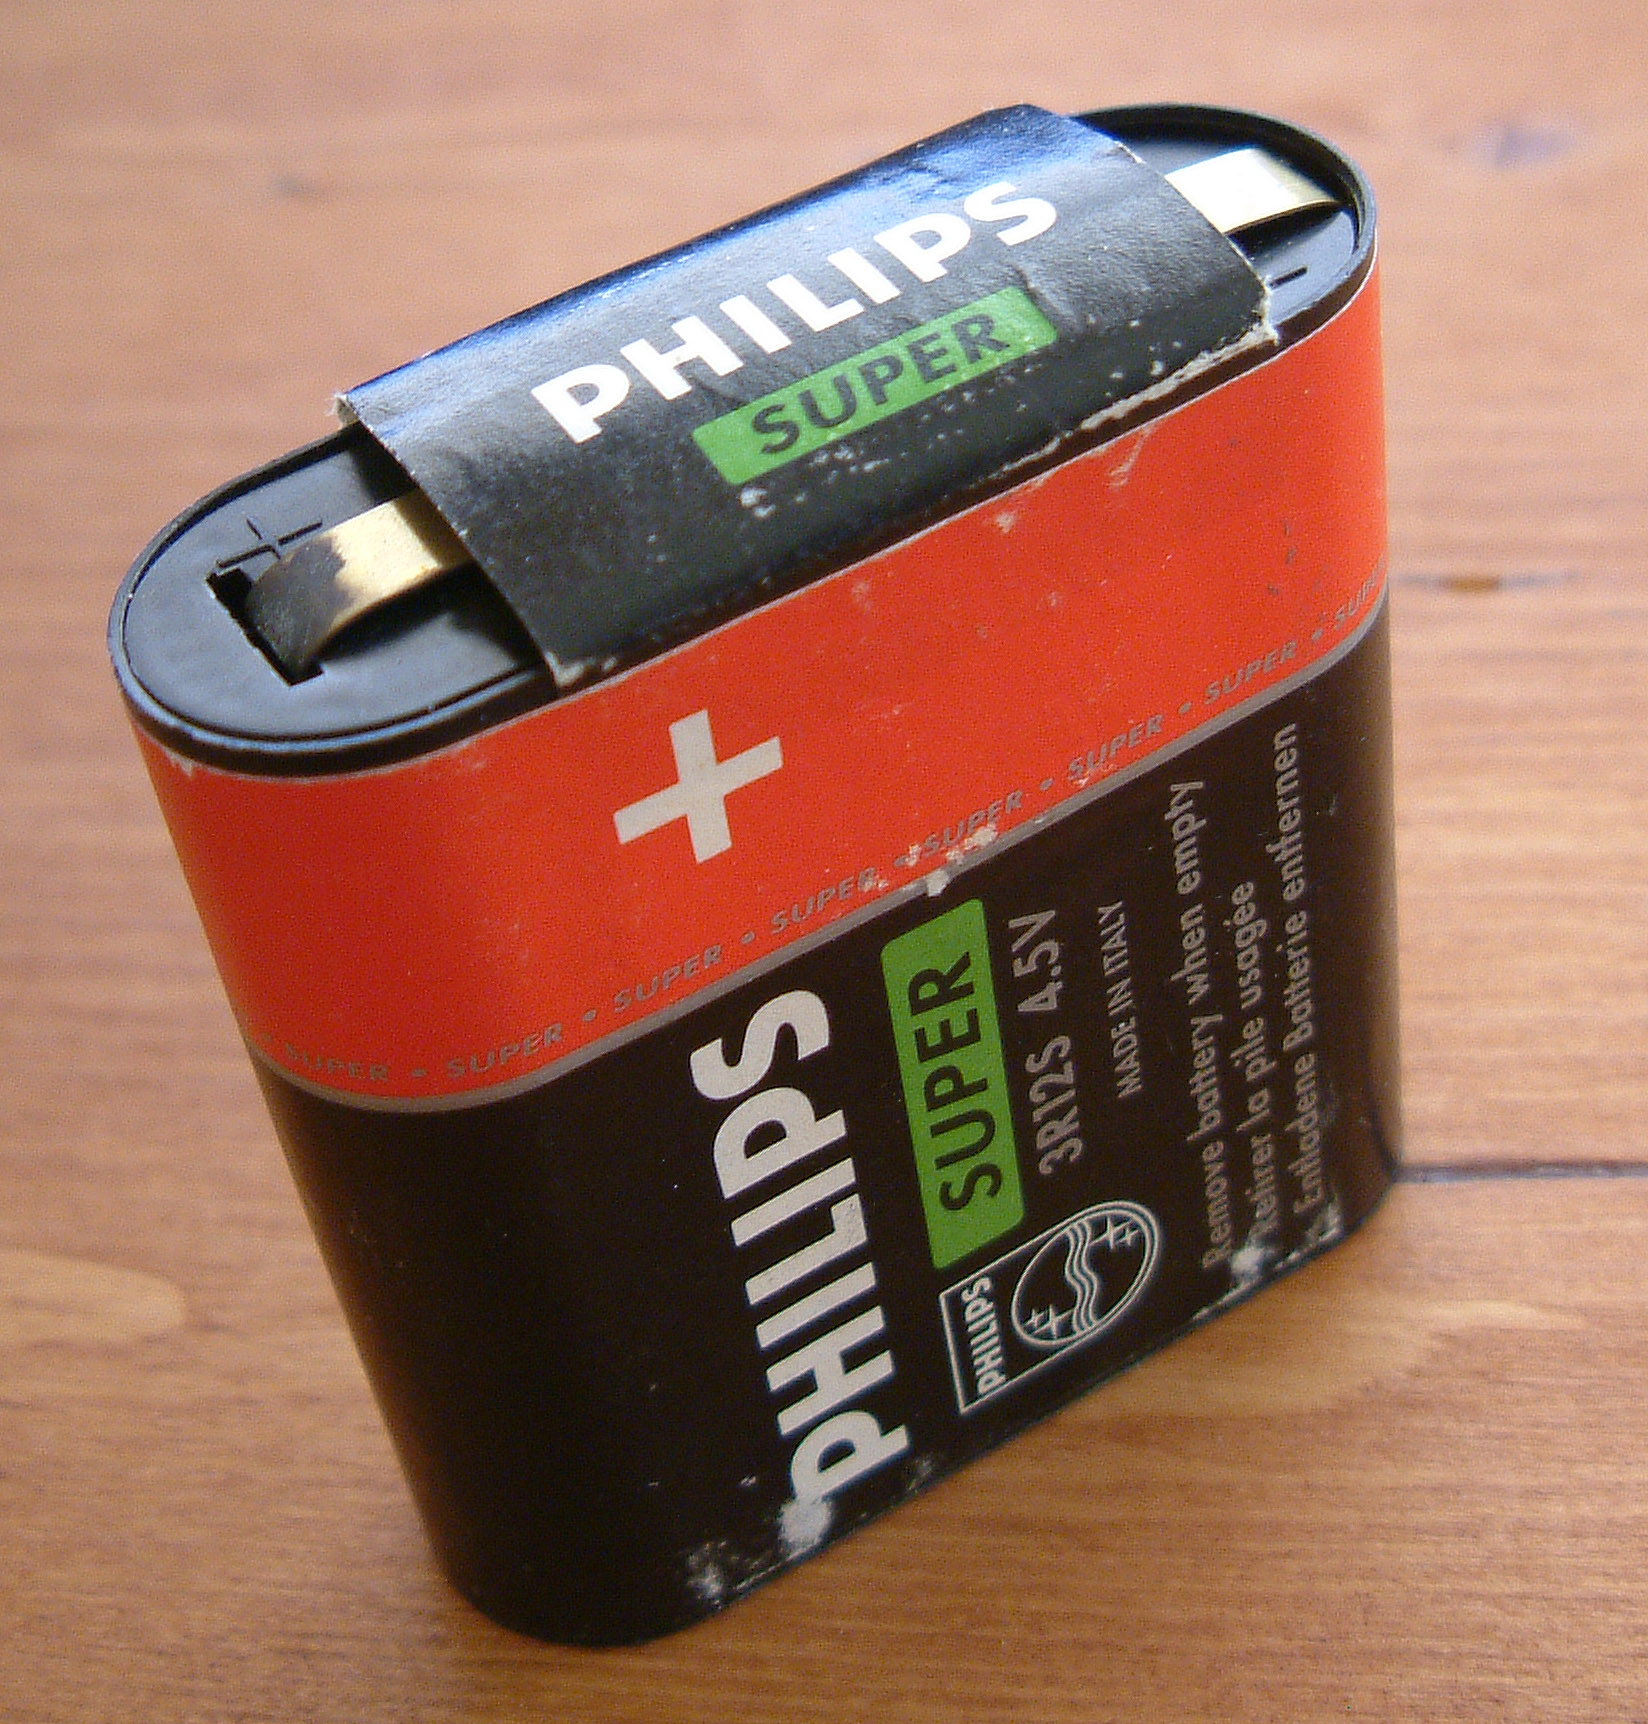 File:Flachbatterie PHILIPS SUPER 4,5 V.jpg - Wikimedia Commons